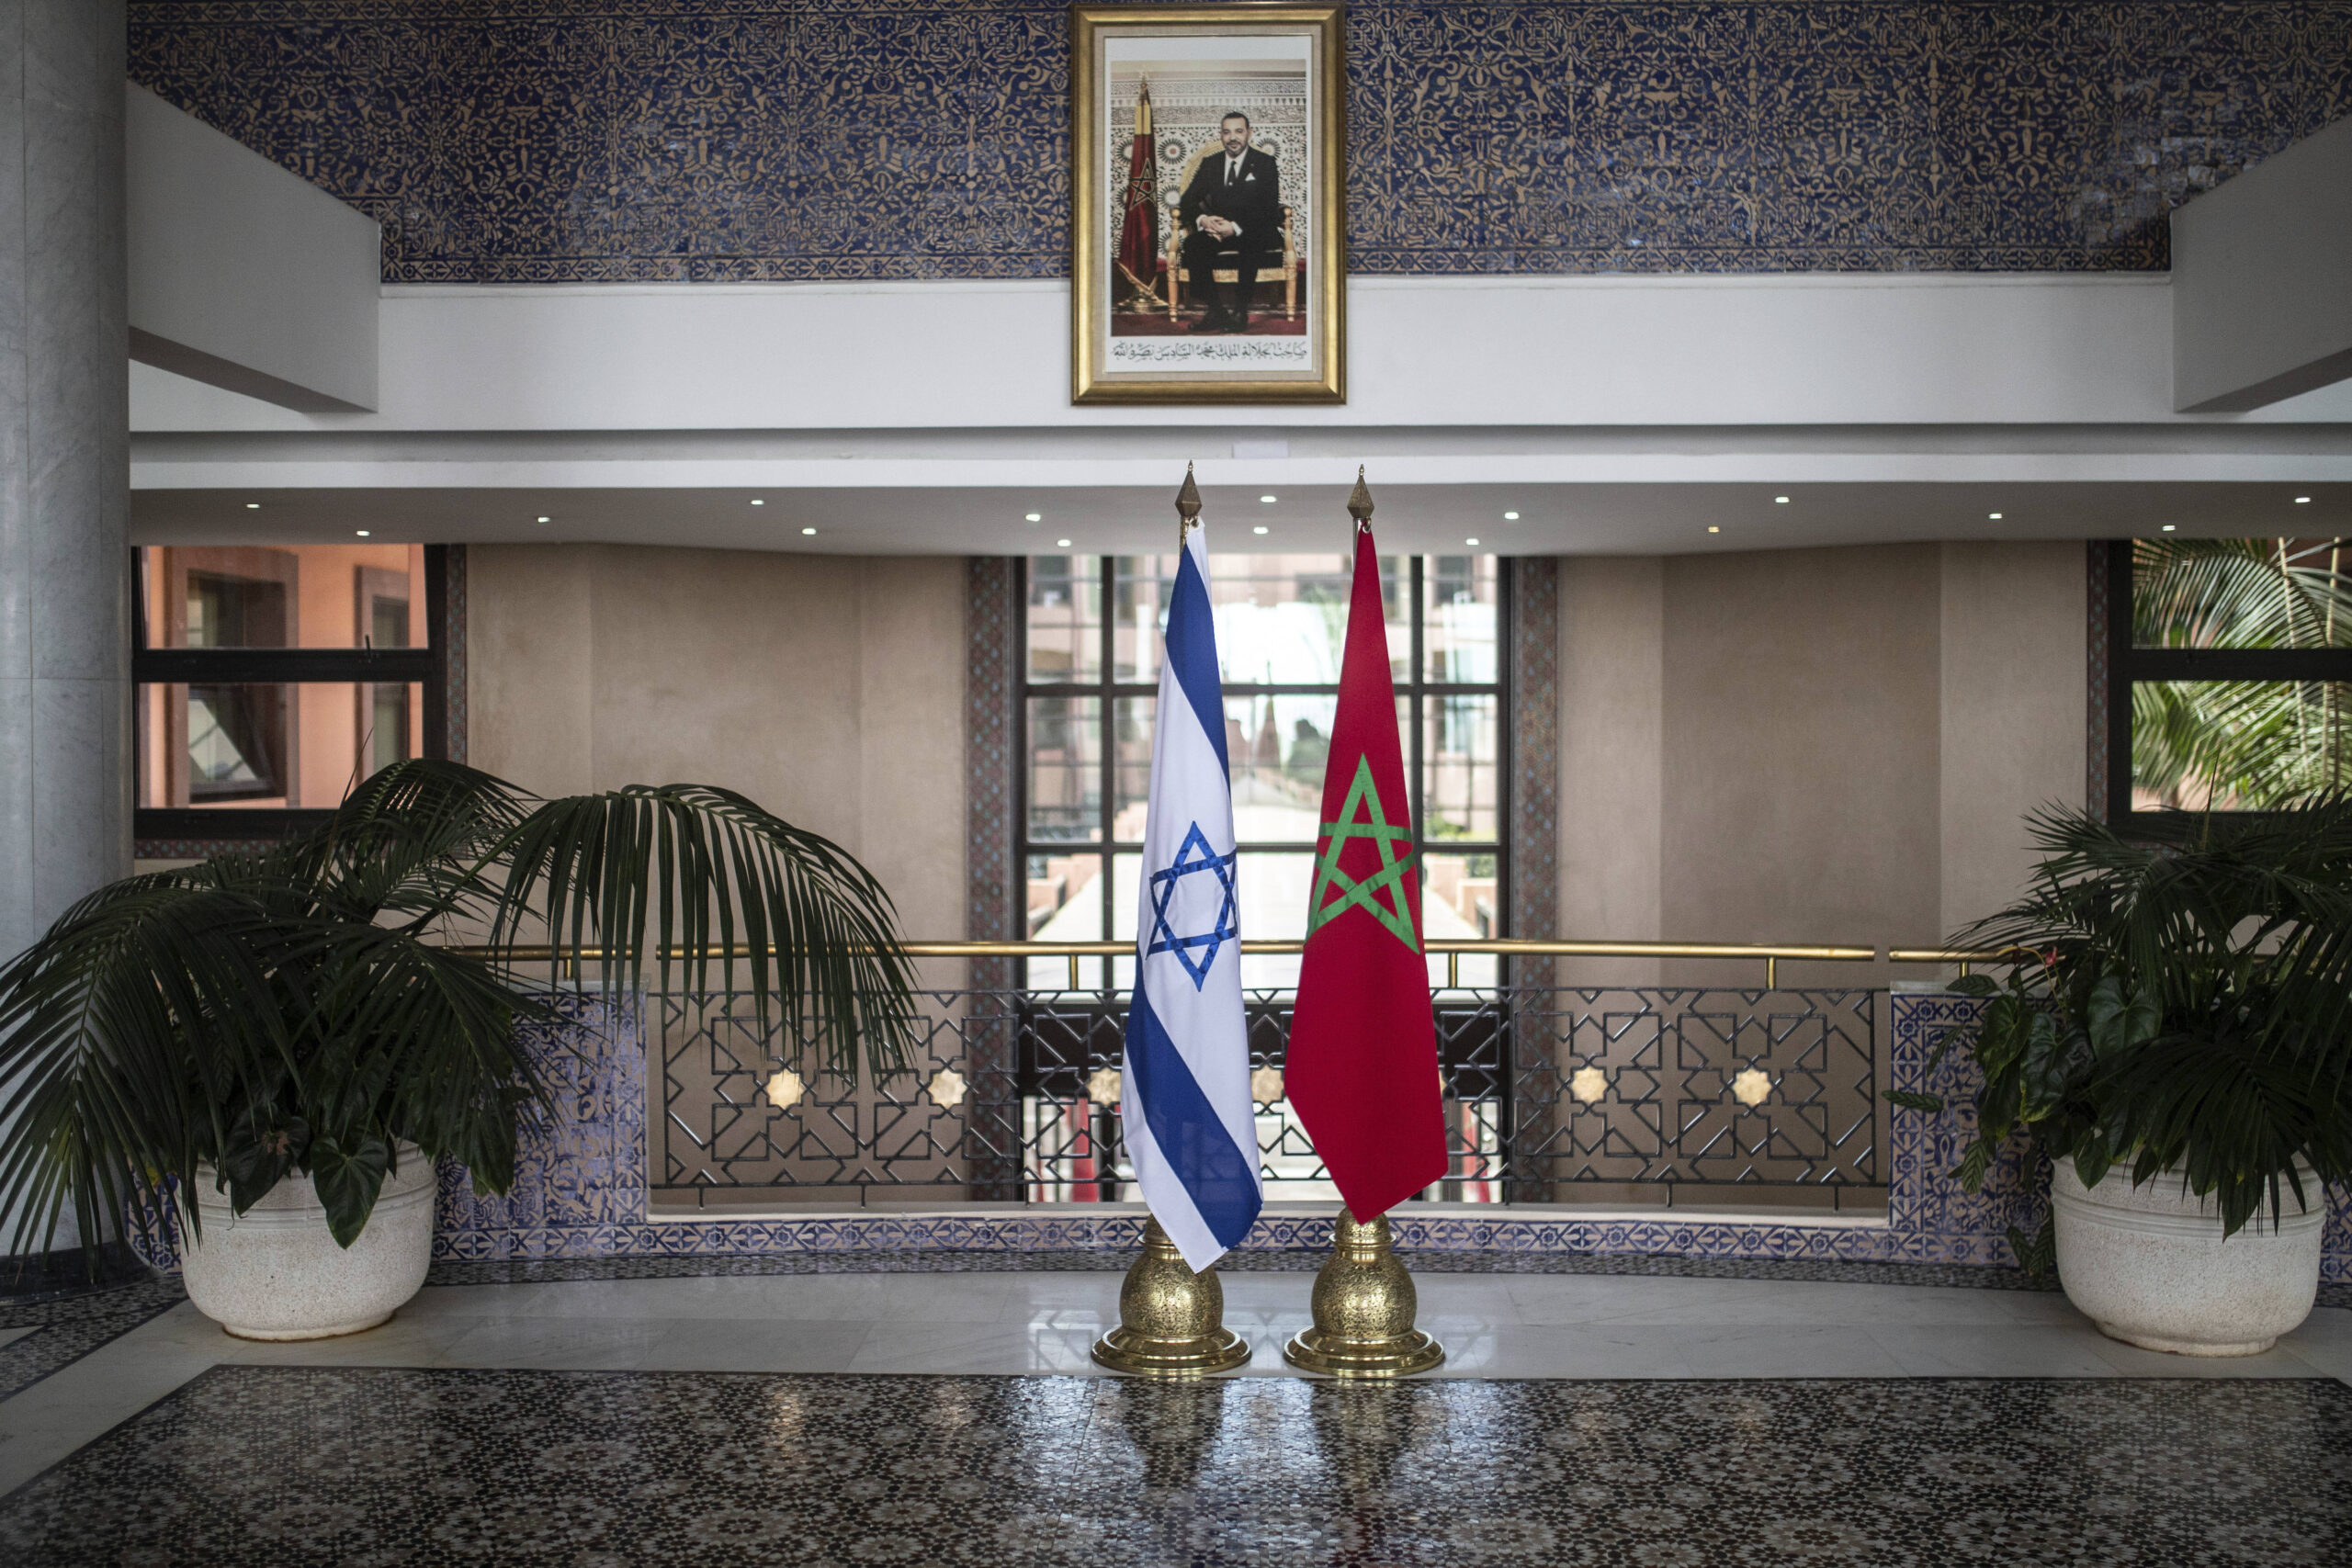 Πρόκληση στον πρωθυπουργό του Ισραήλ να επισκεφθεί τη χώρα του απηύθυνε ο βασιλιάς του Μαρόκου